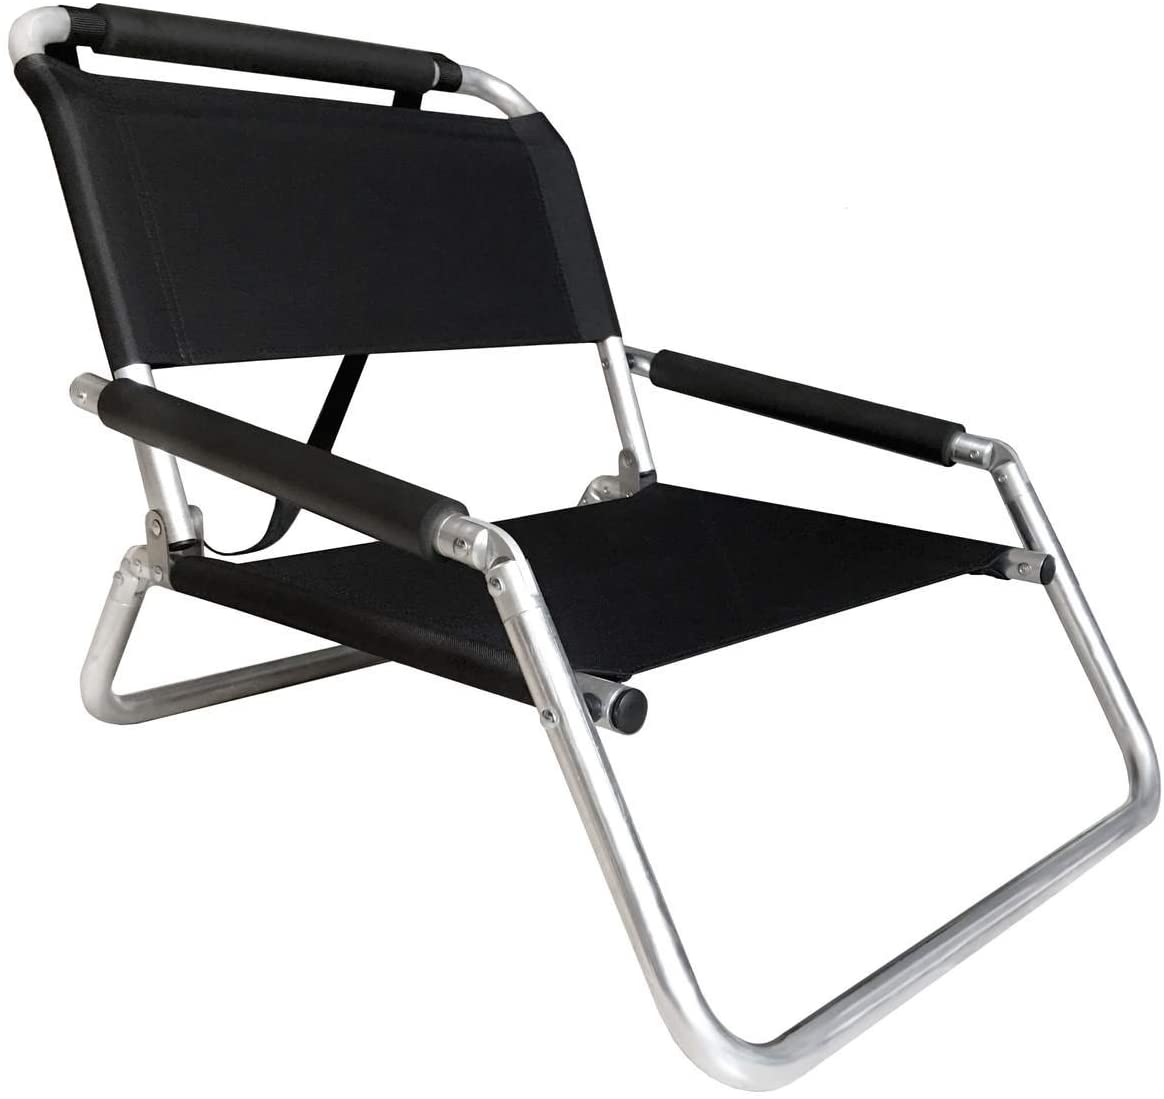 Neso Beach Chair, best beach chairs